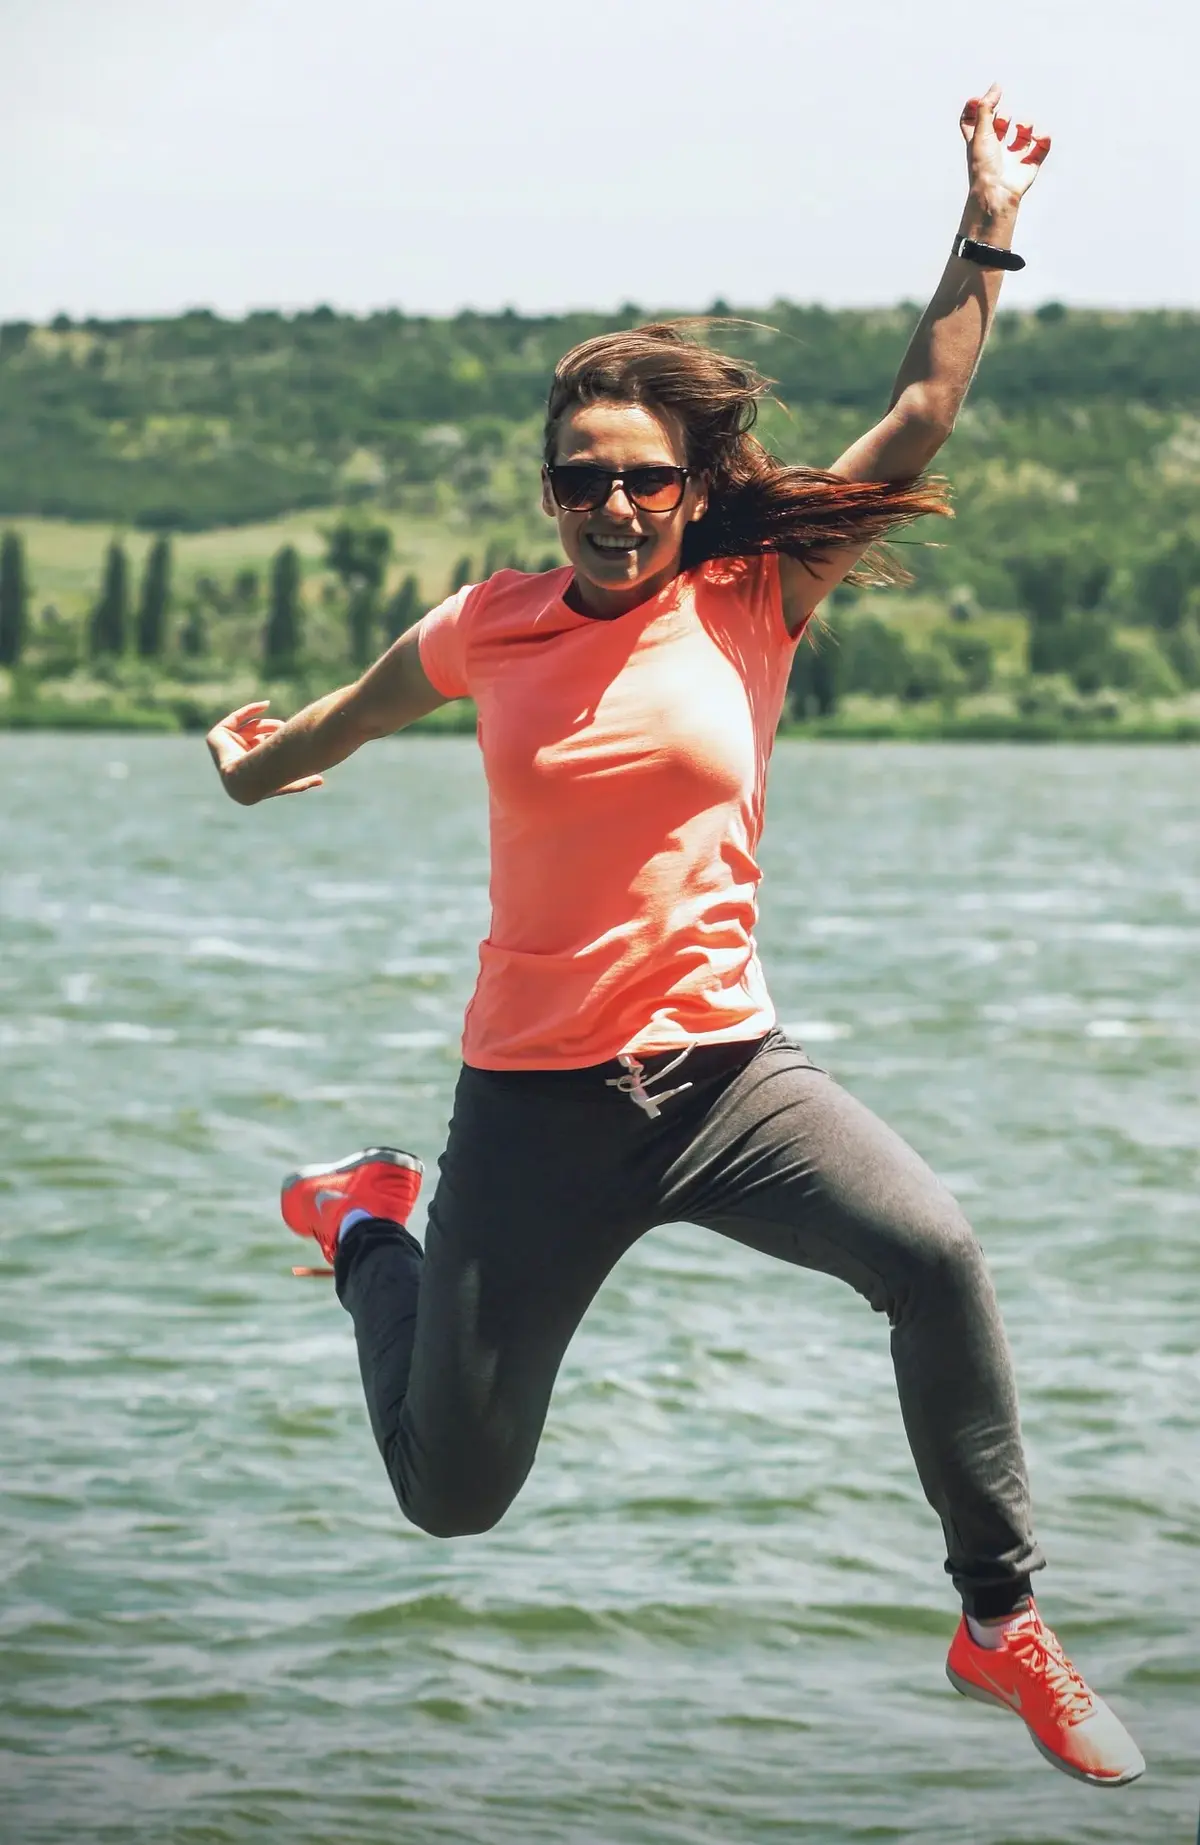 Radośnie skacząca w górę kobieta ubrana w sportową pomarańczową koszulkę, dresowe spodnie i sportowe buty na tle jeziora